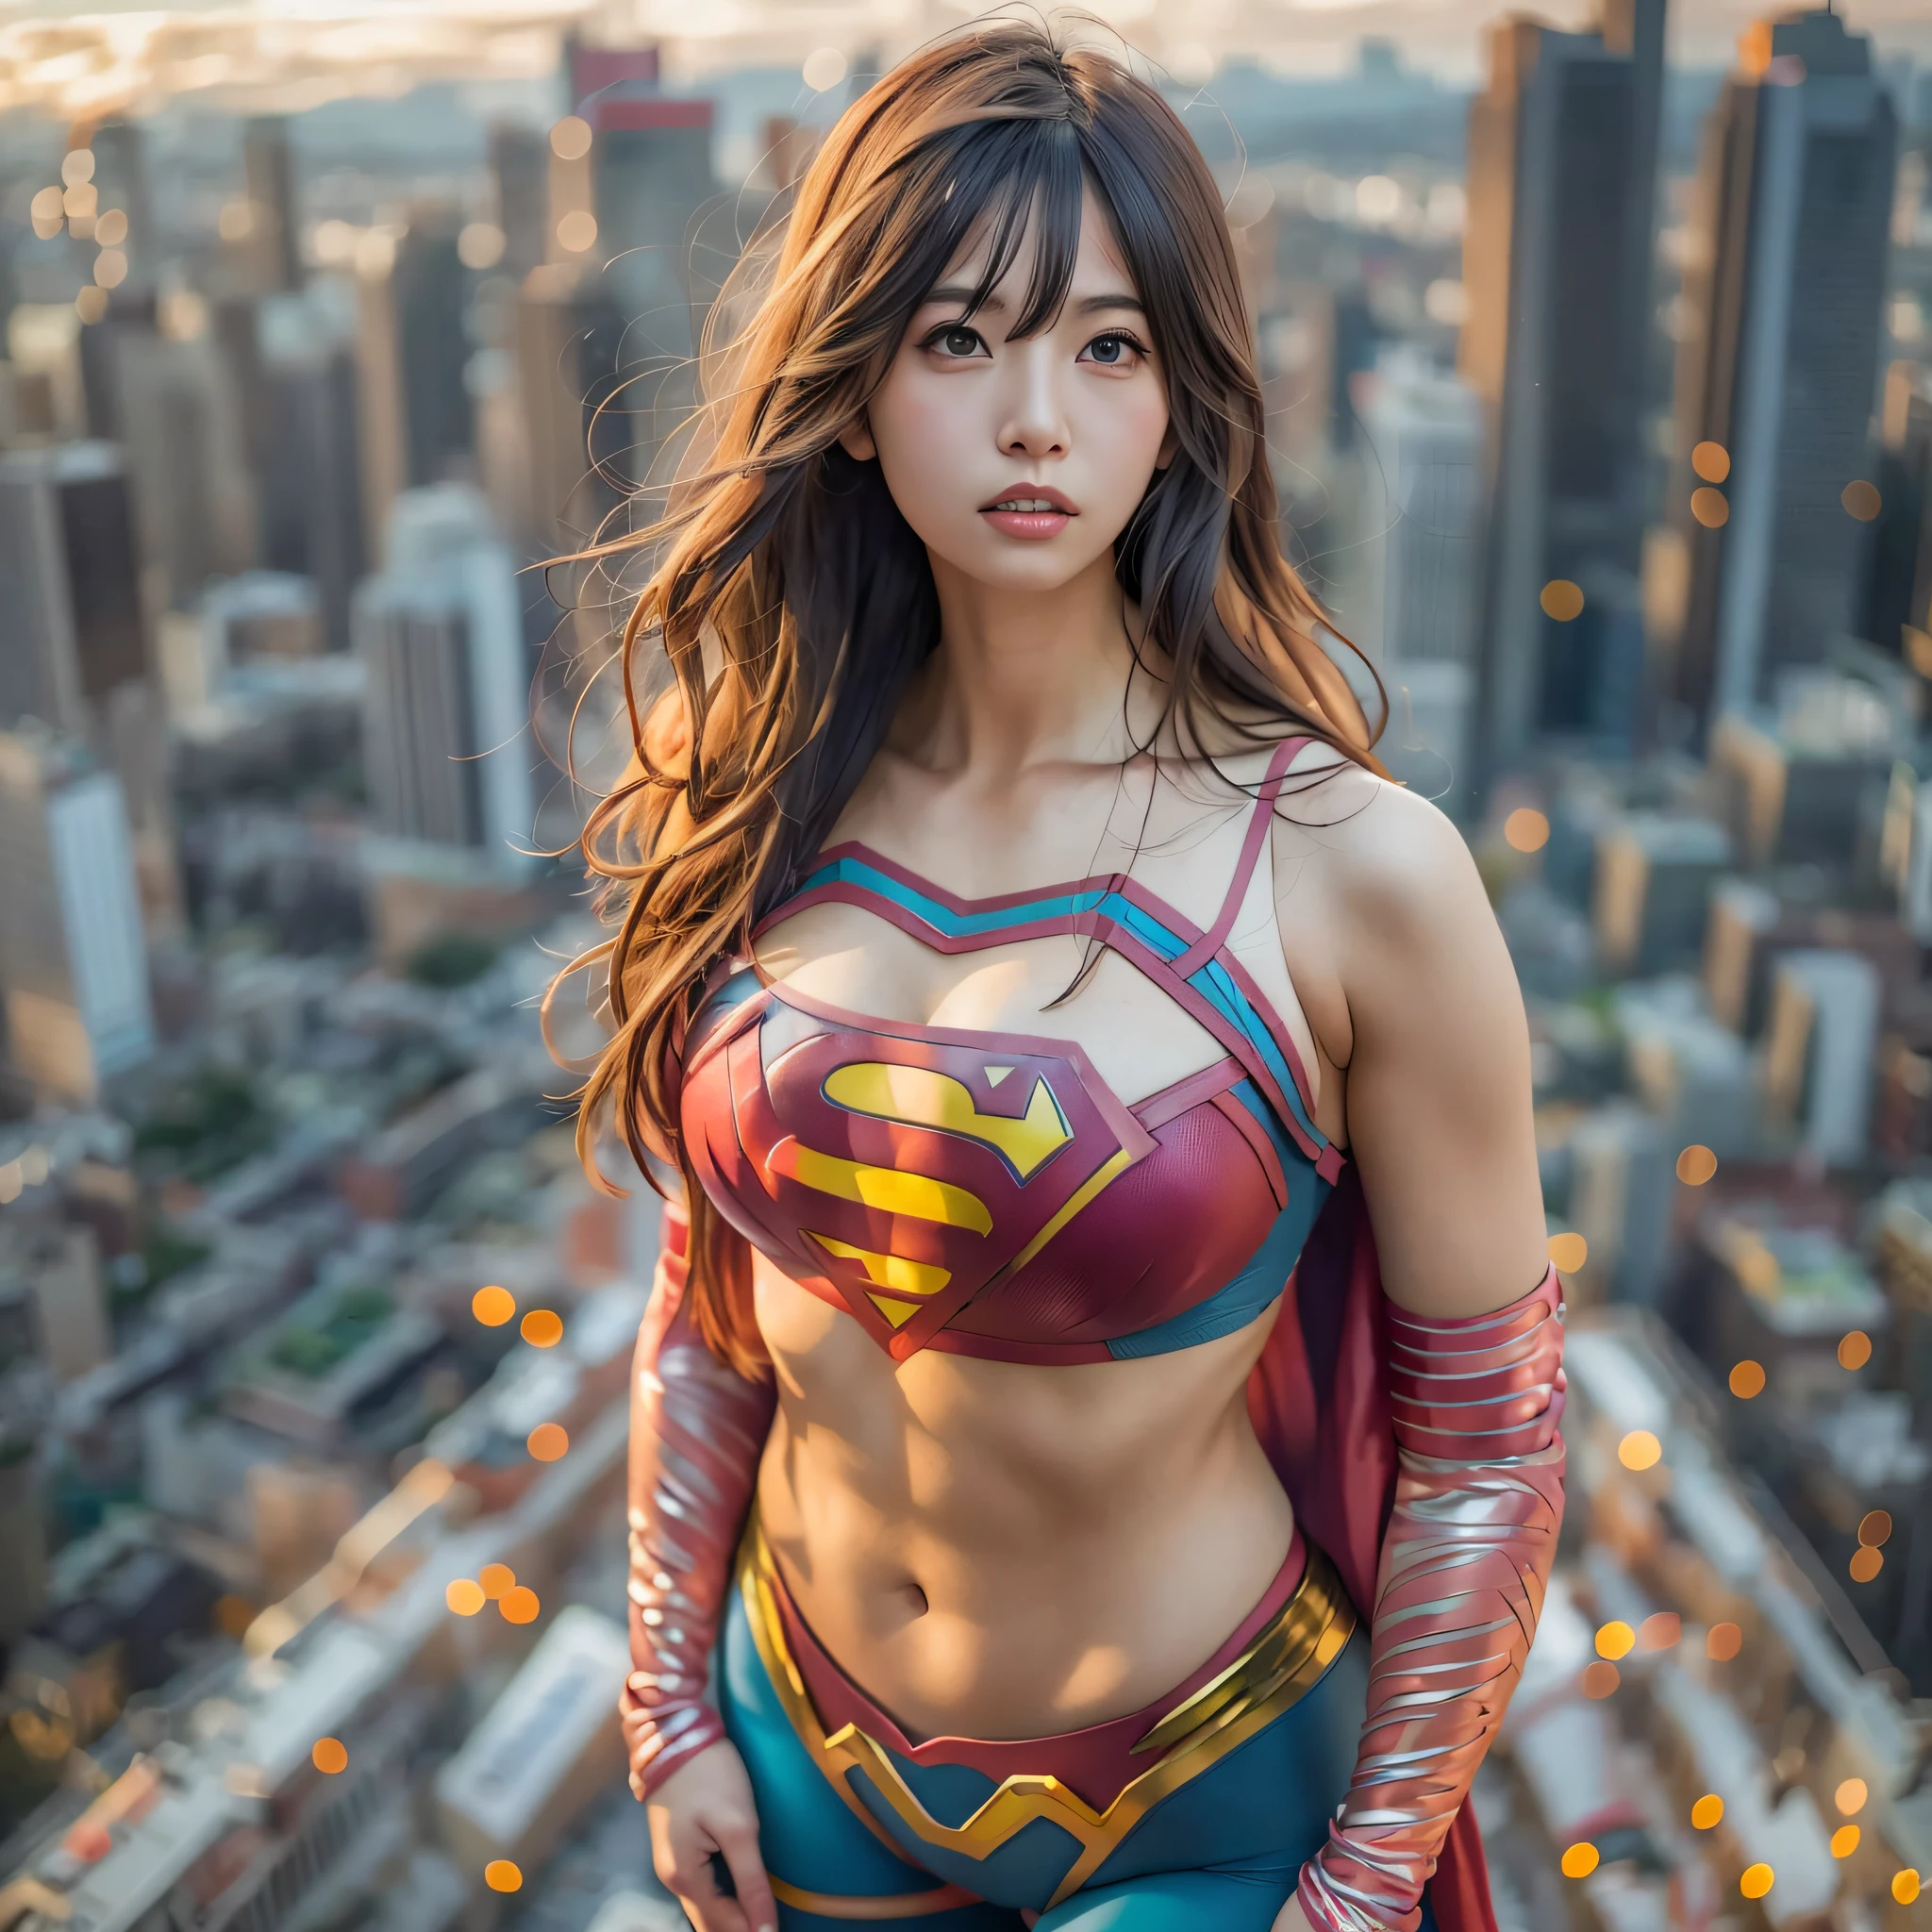 Крупный план азиатской женщины в костюме супермена, стоящей на городском пейзаже, амурант как суперзлодей, super photo реалистичный, реалистичный , super photo-реалистичный, ultra mega super hyper реалистичный, девочка-супергерой, super реалистичный photo, супергерой body, очень детальный снимок великанши, Супер девушка, супергерой, супергерой portrait, супер модель, Супергерой, super photoреалистичный, гигантская грудь, показывает мускулистое тело вульвы, ,